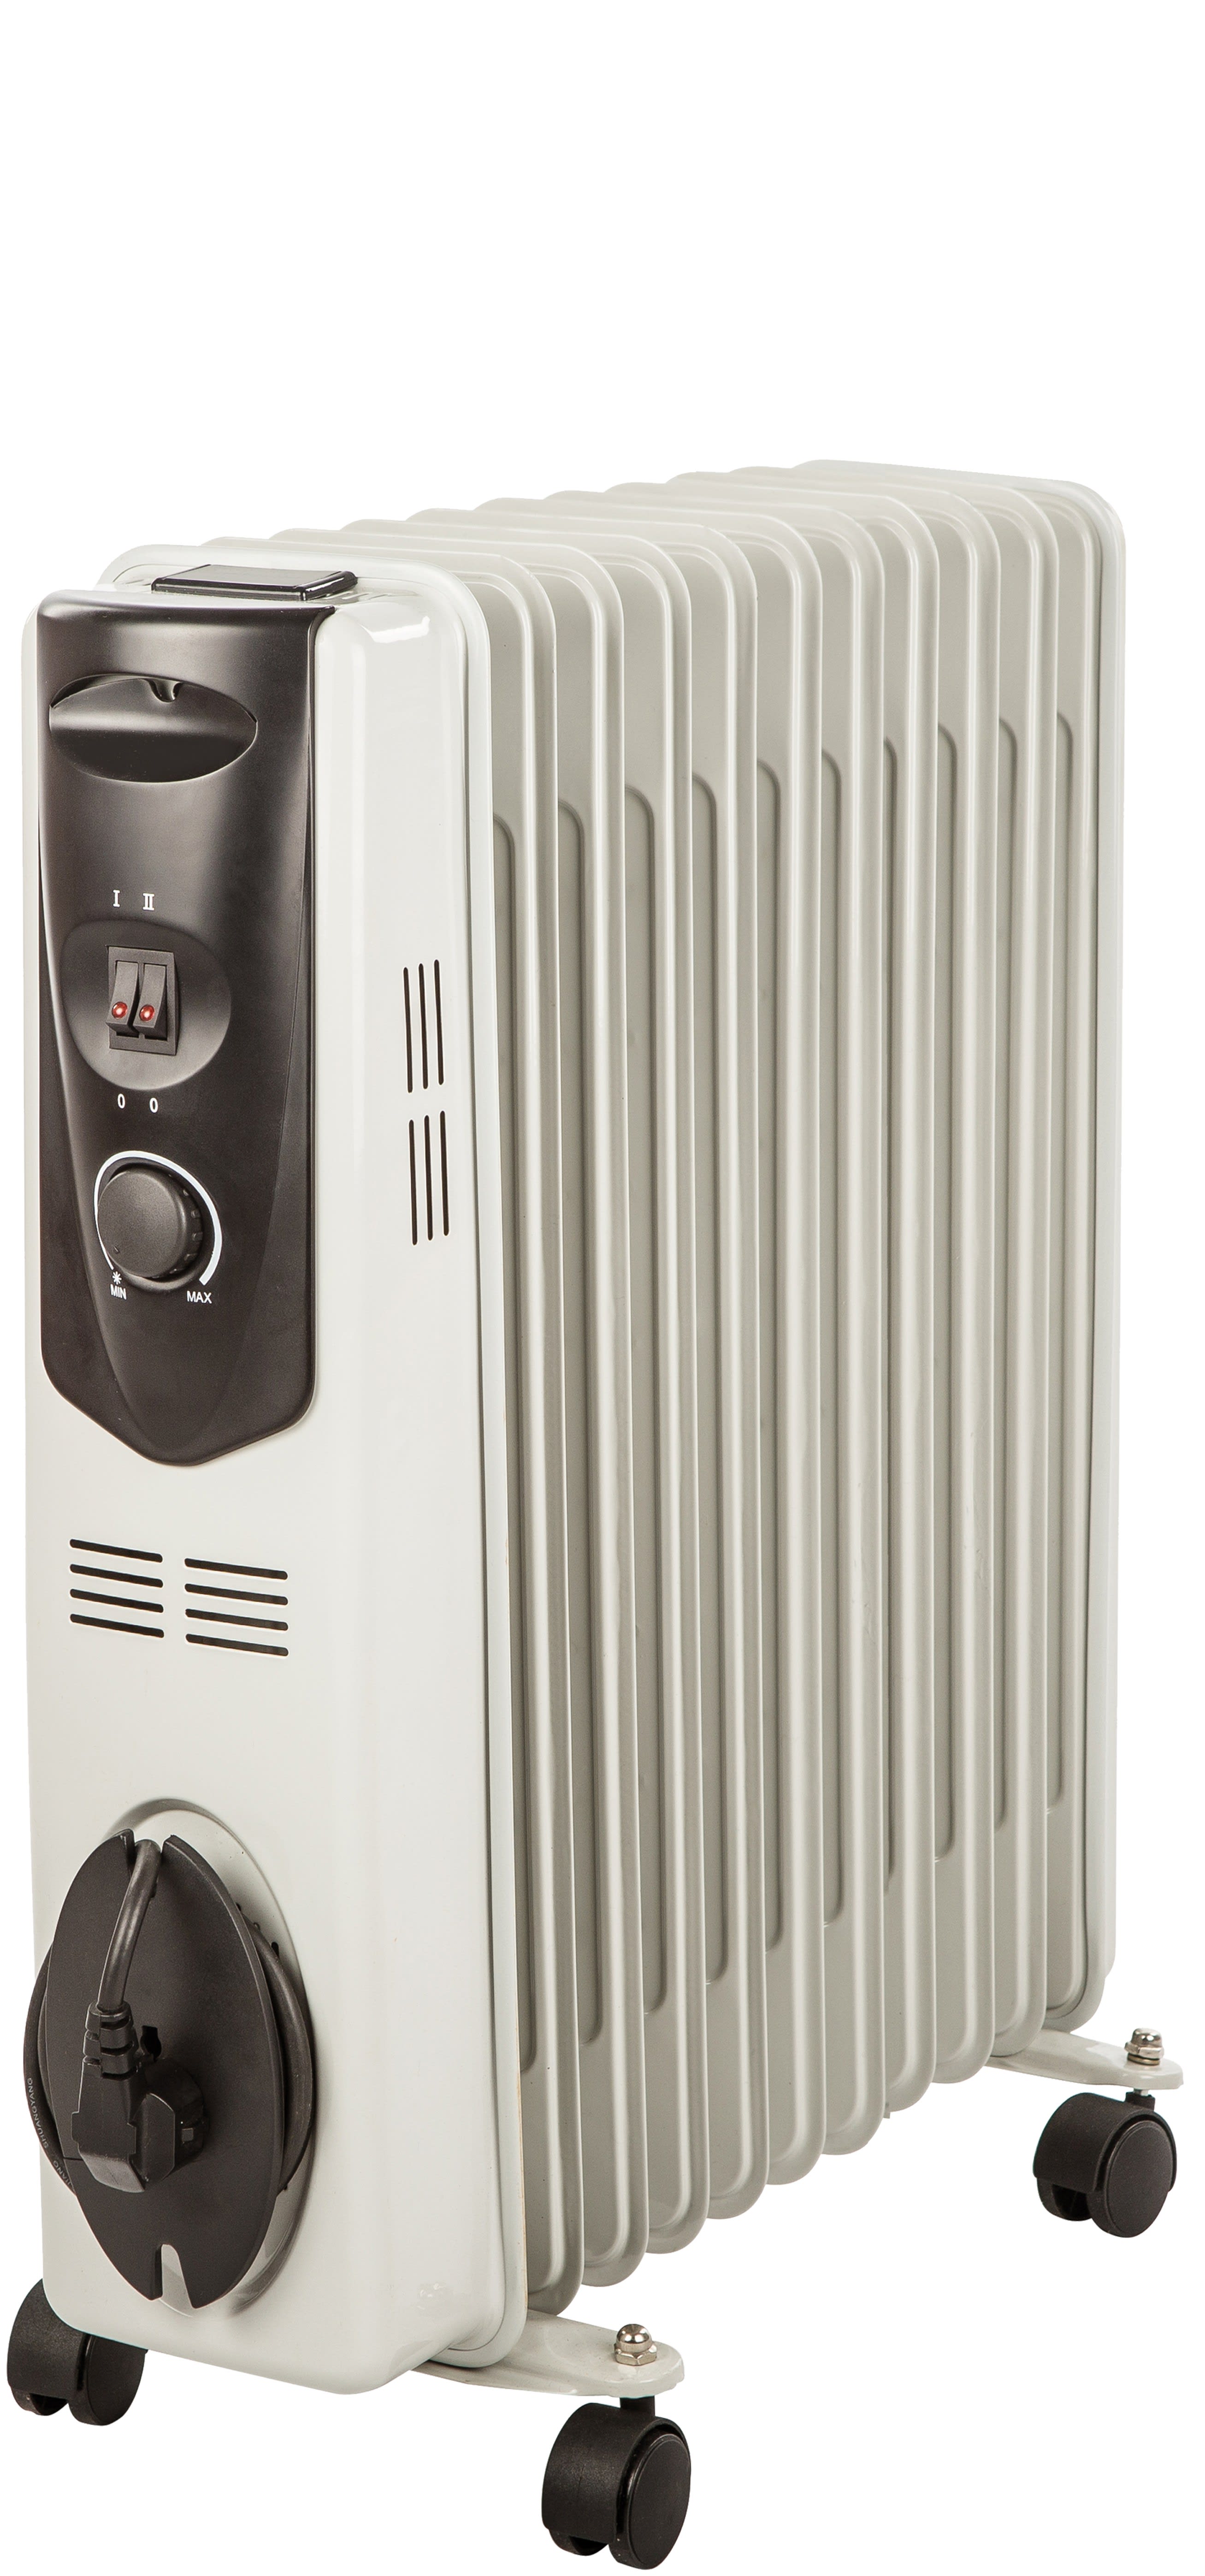 Sanford Smart radiateur à huile, Puissance 2500 W